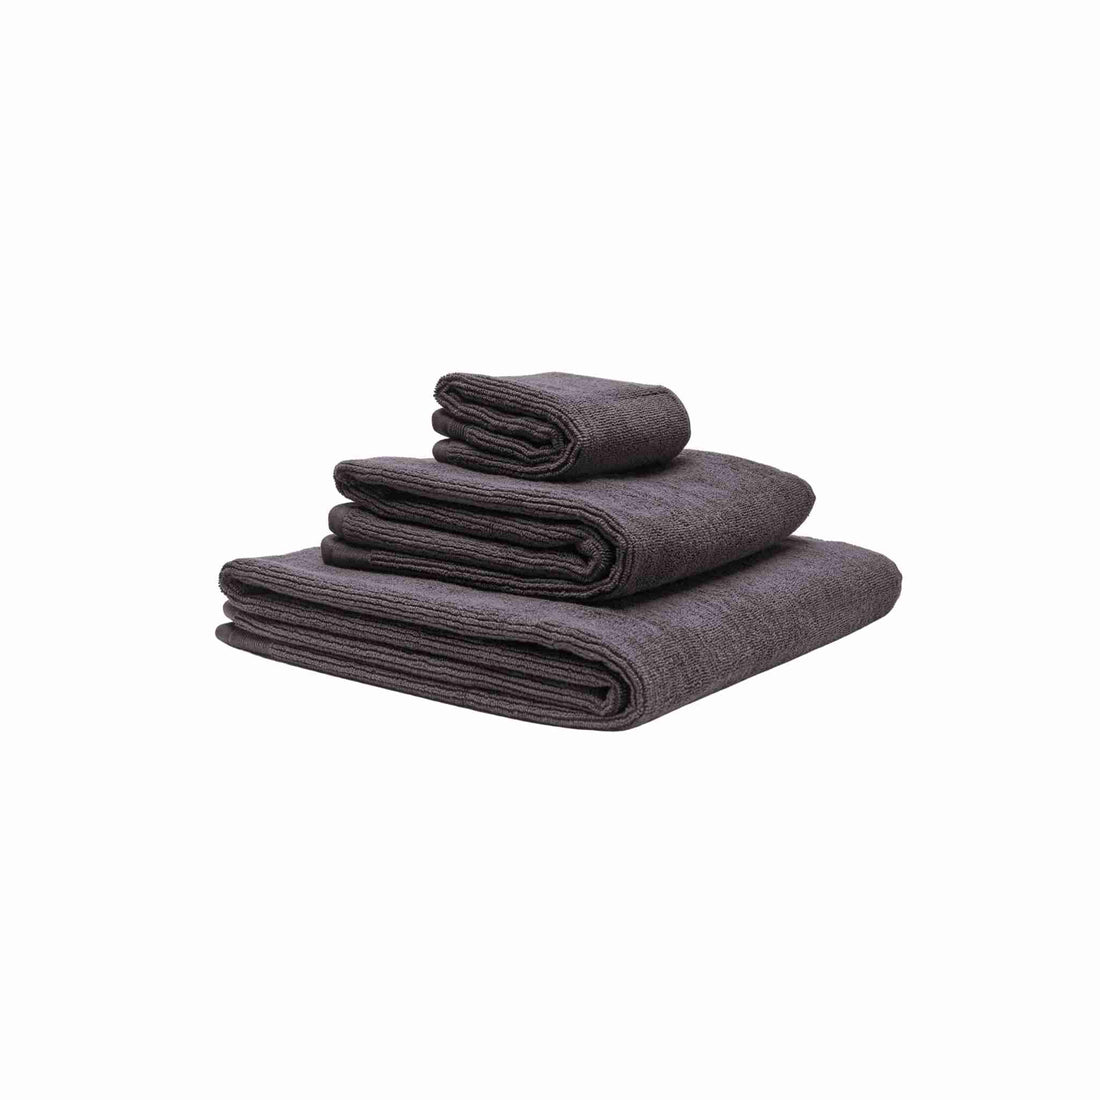 Tre håndklæder i økologisk bomuld og af forskellig størrelser stablet oven på hinanden. Farven på håndklæderne er stålgrå.